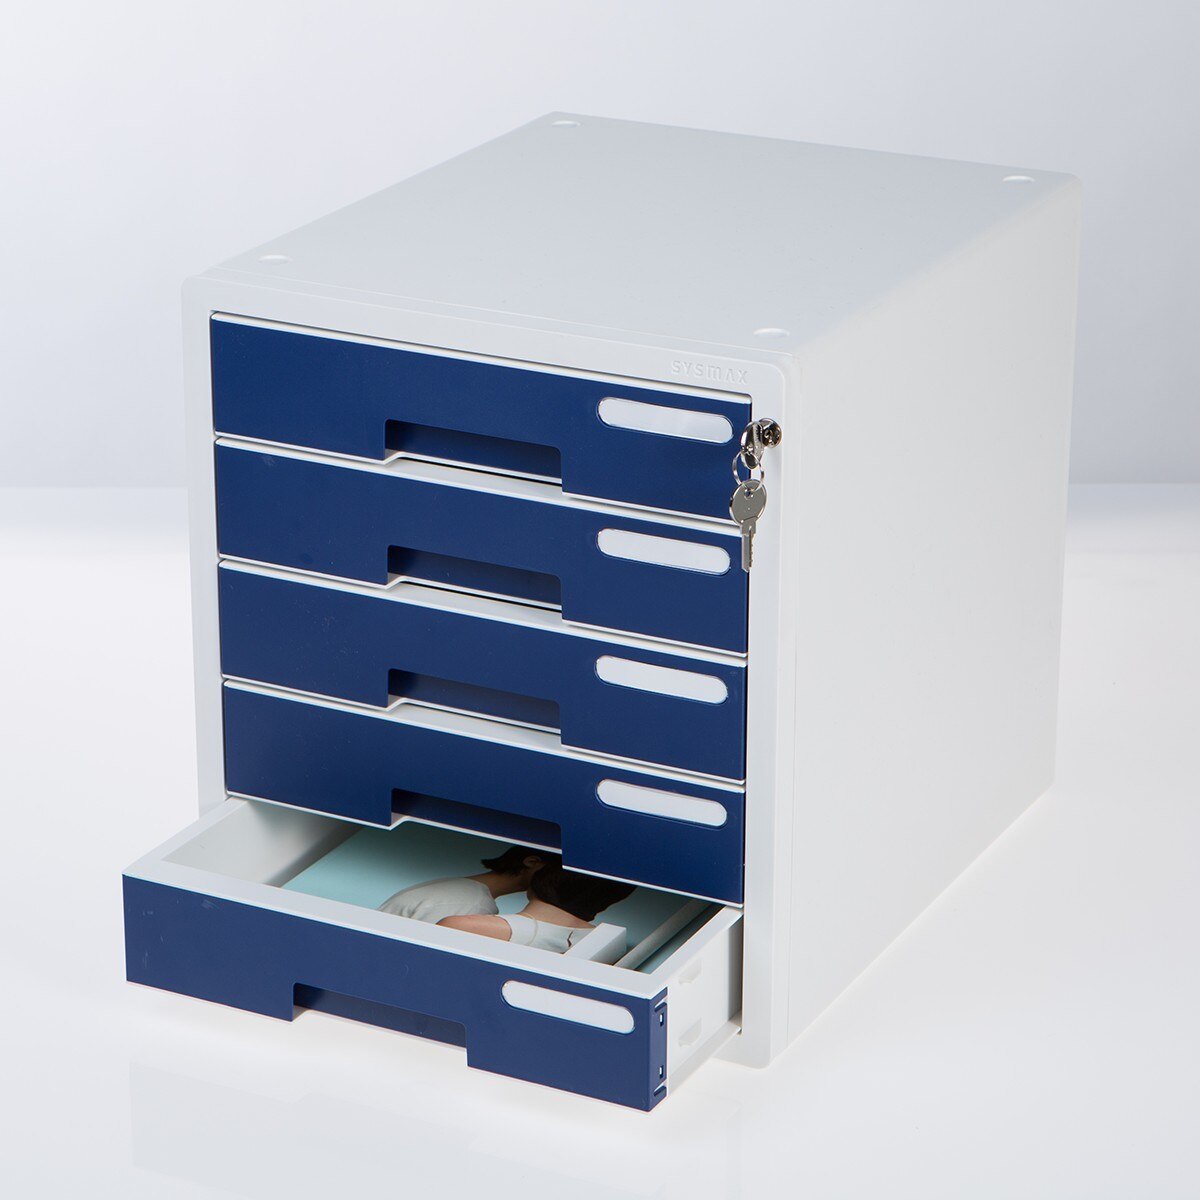 Sysmax 桌上型鎖定式五層資料櫃 深藍